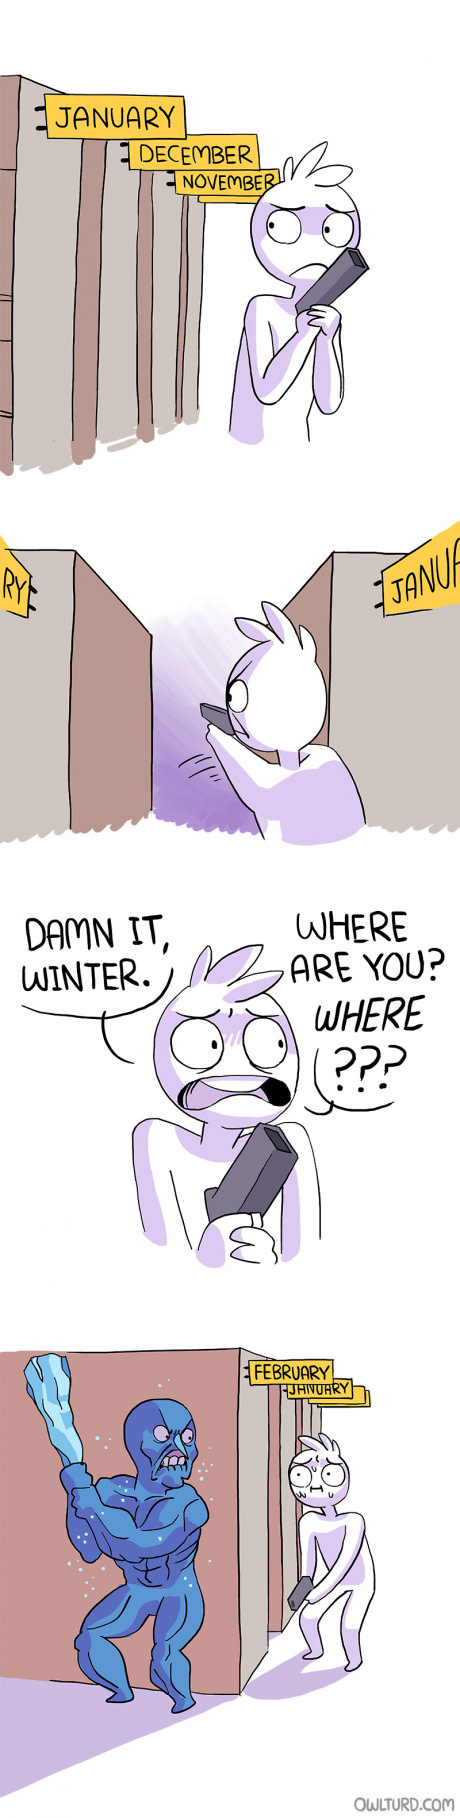 comics-winter-col-february